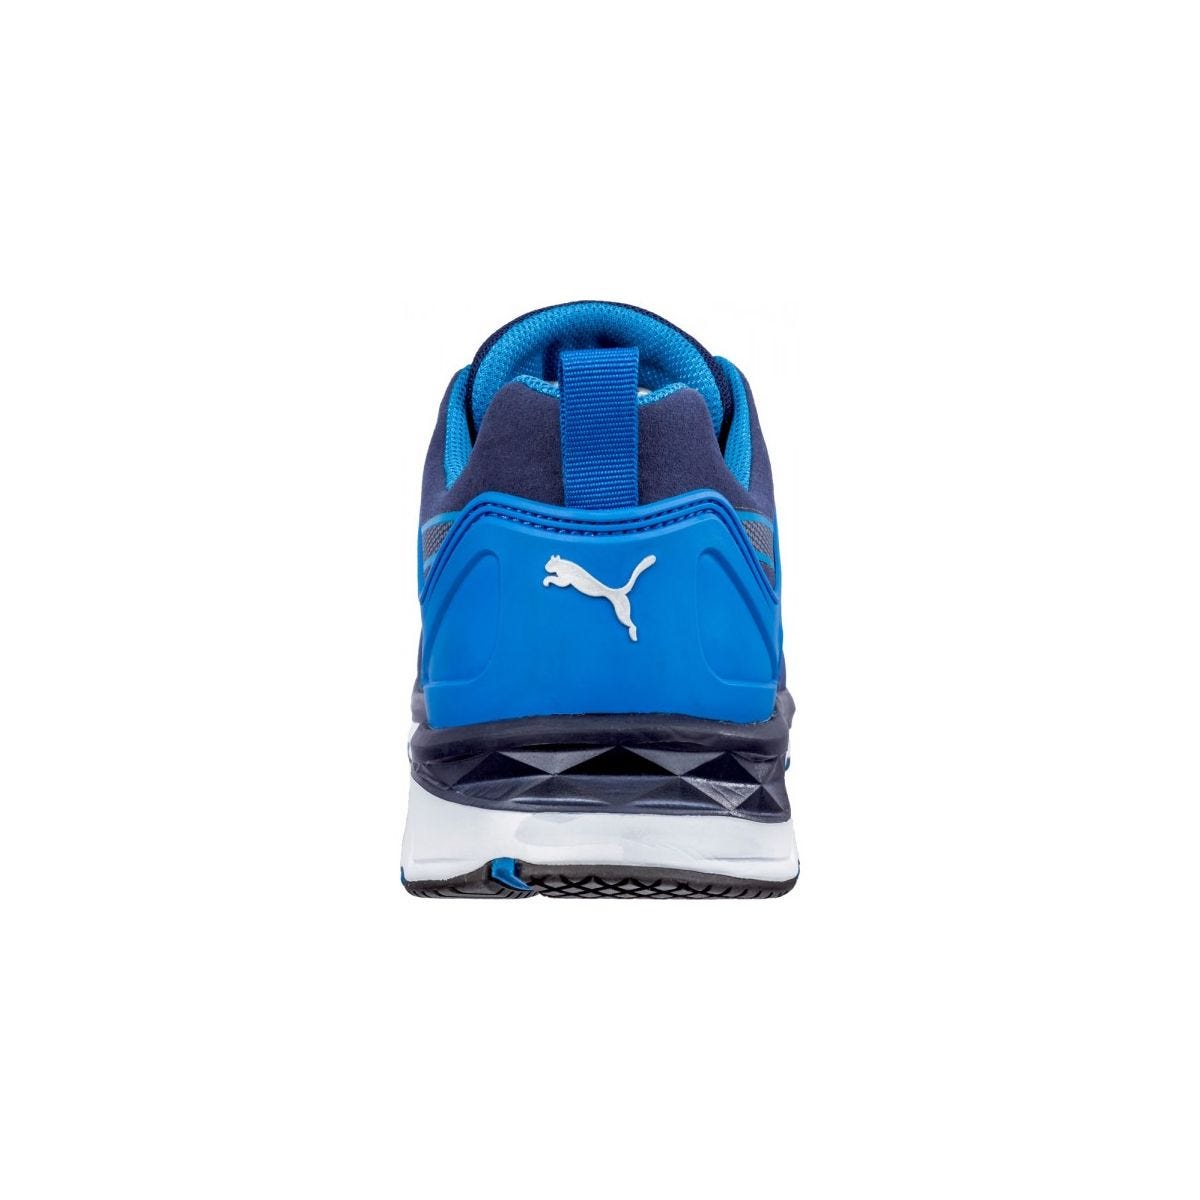 Chaussures de sécurité Velocity 2.0 Bleu Low S1P - Puma - Taille 44 1